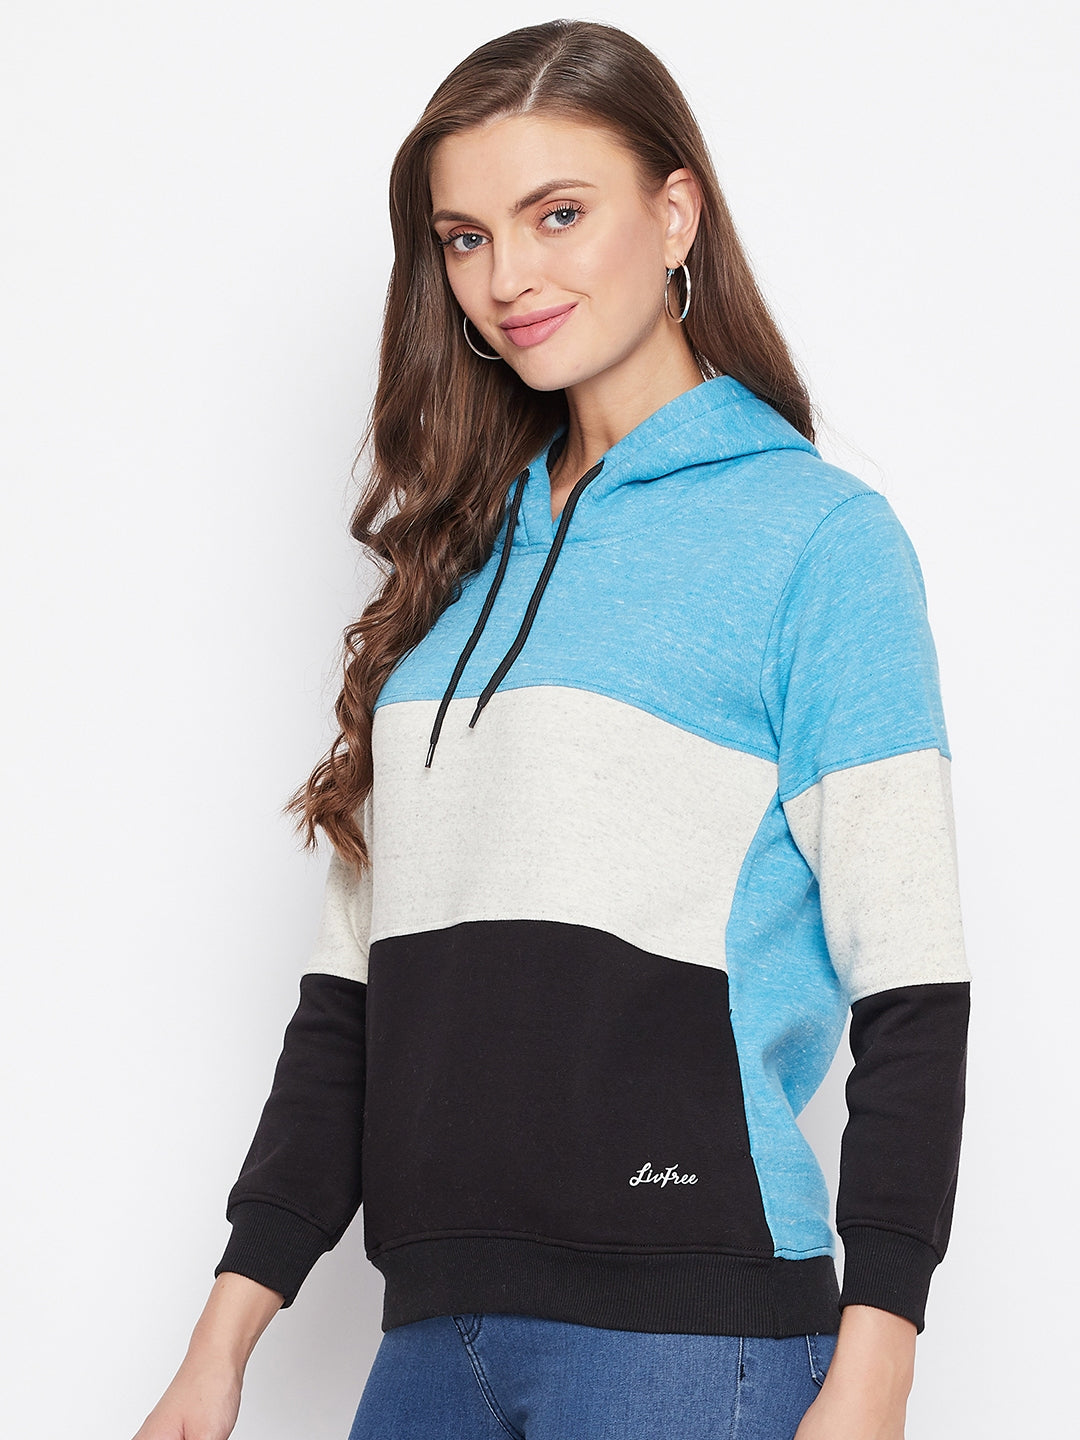 Livfree Women's Hoodie Full Sleeves Color Blocked Sweatshirt - Vivid Mix